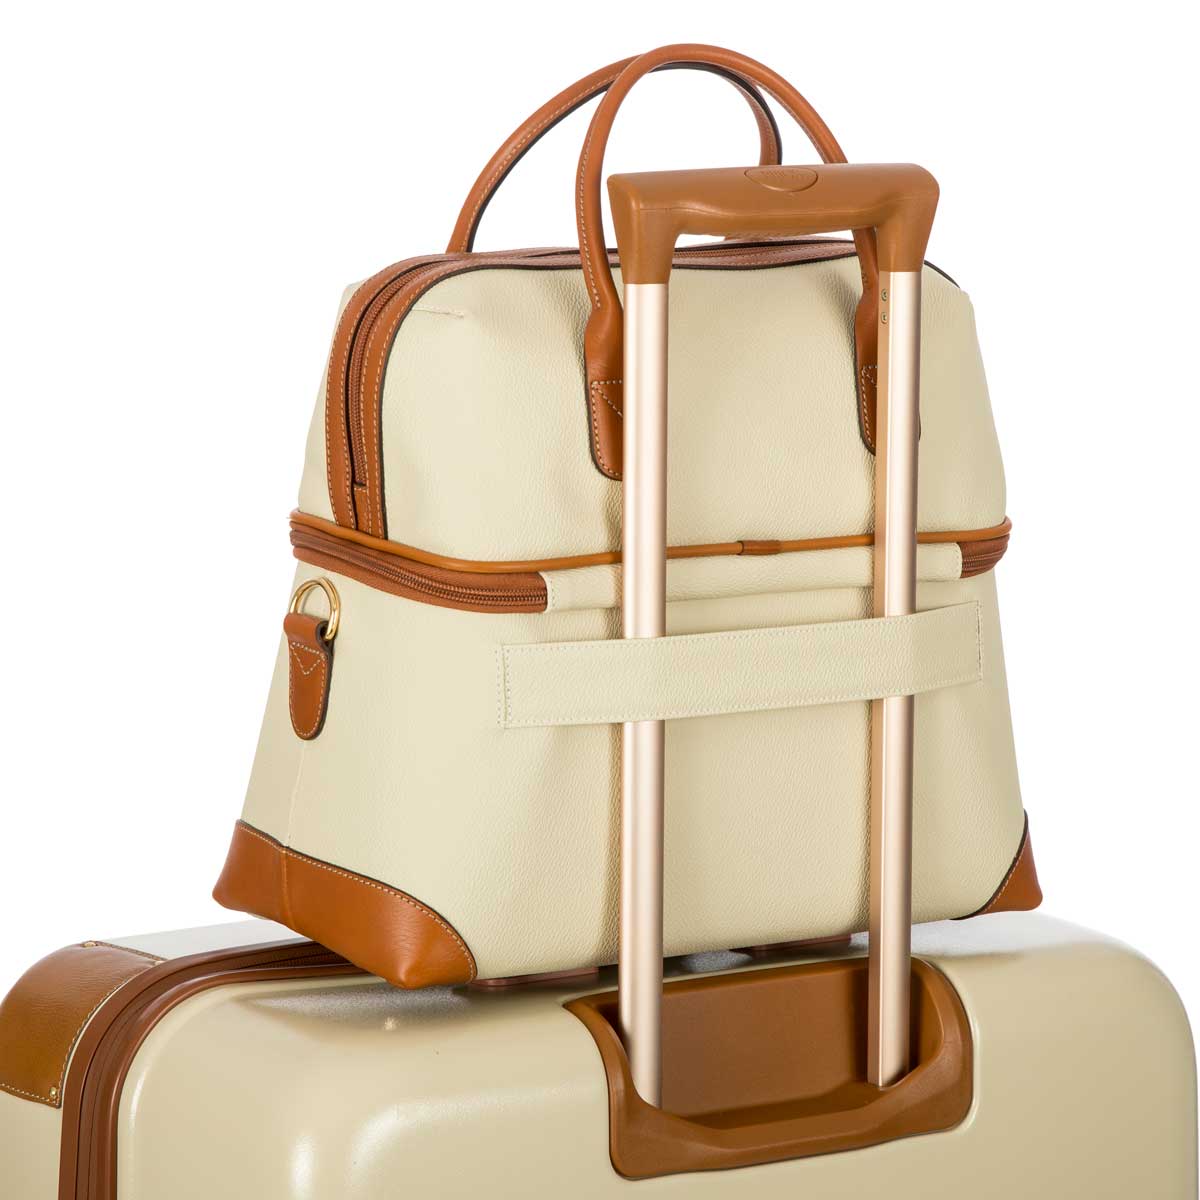 Túi du lịch nữ Bric’s Firenze BBJ02530.014 túi xách nữ, túi tote, túi du lịch đa năng, siêu bền, siêu nhẹ, chống va đập